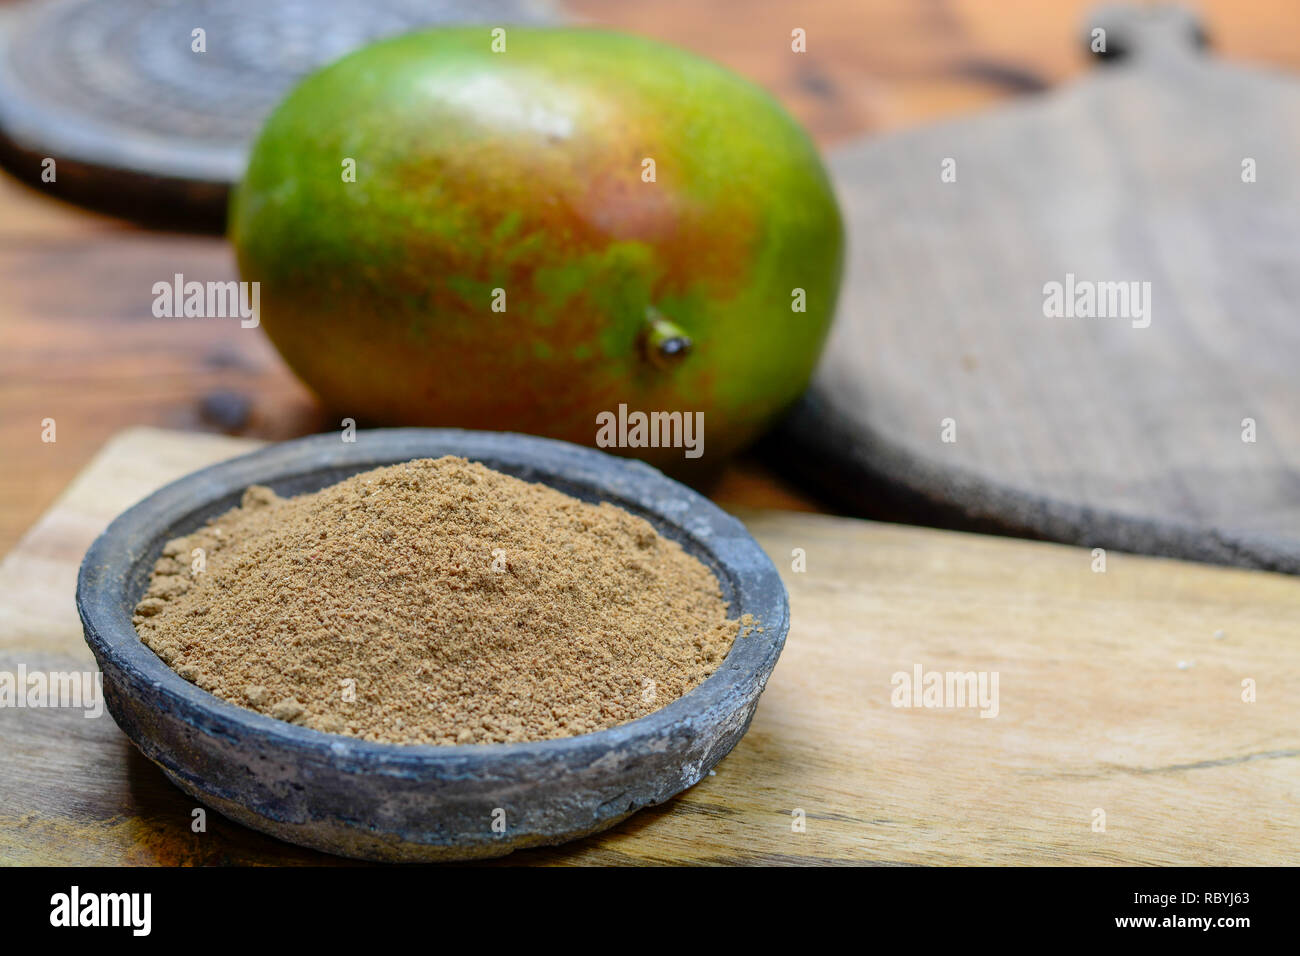 Amchoor ou aamchur, la mangue en poudre, poudre d'épices fruité à base de mangues vertes non mûres séchées en Inde, utilisé pour aromatiser les aliments close-up Banque D'Images